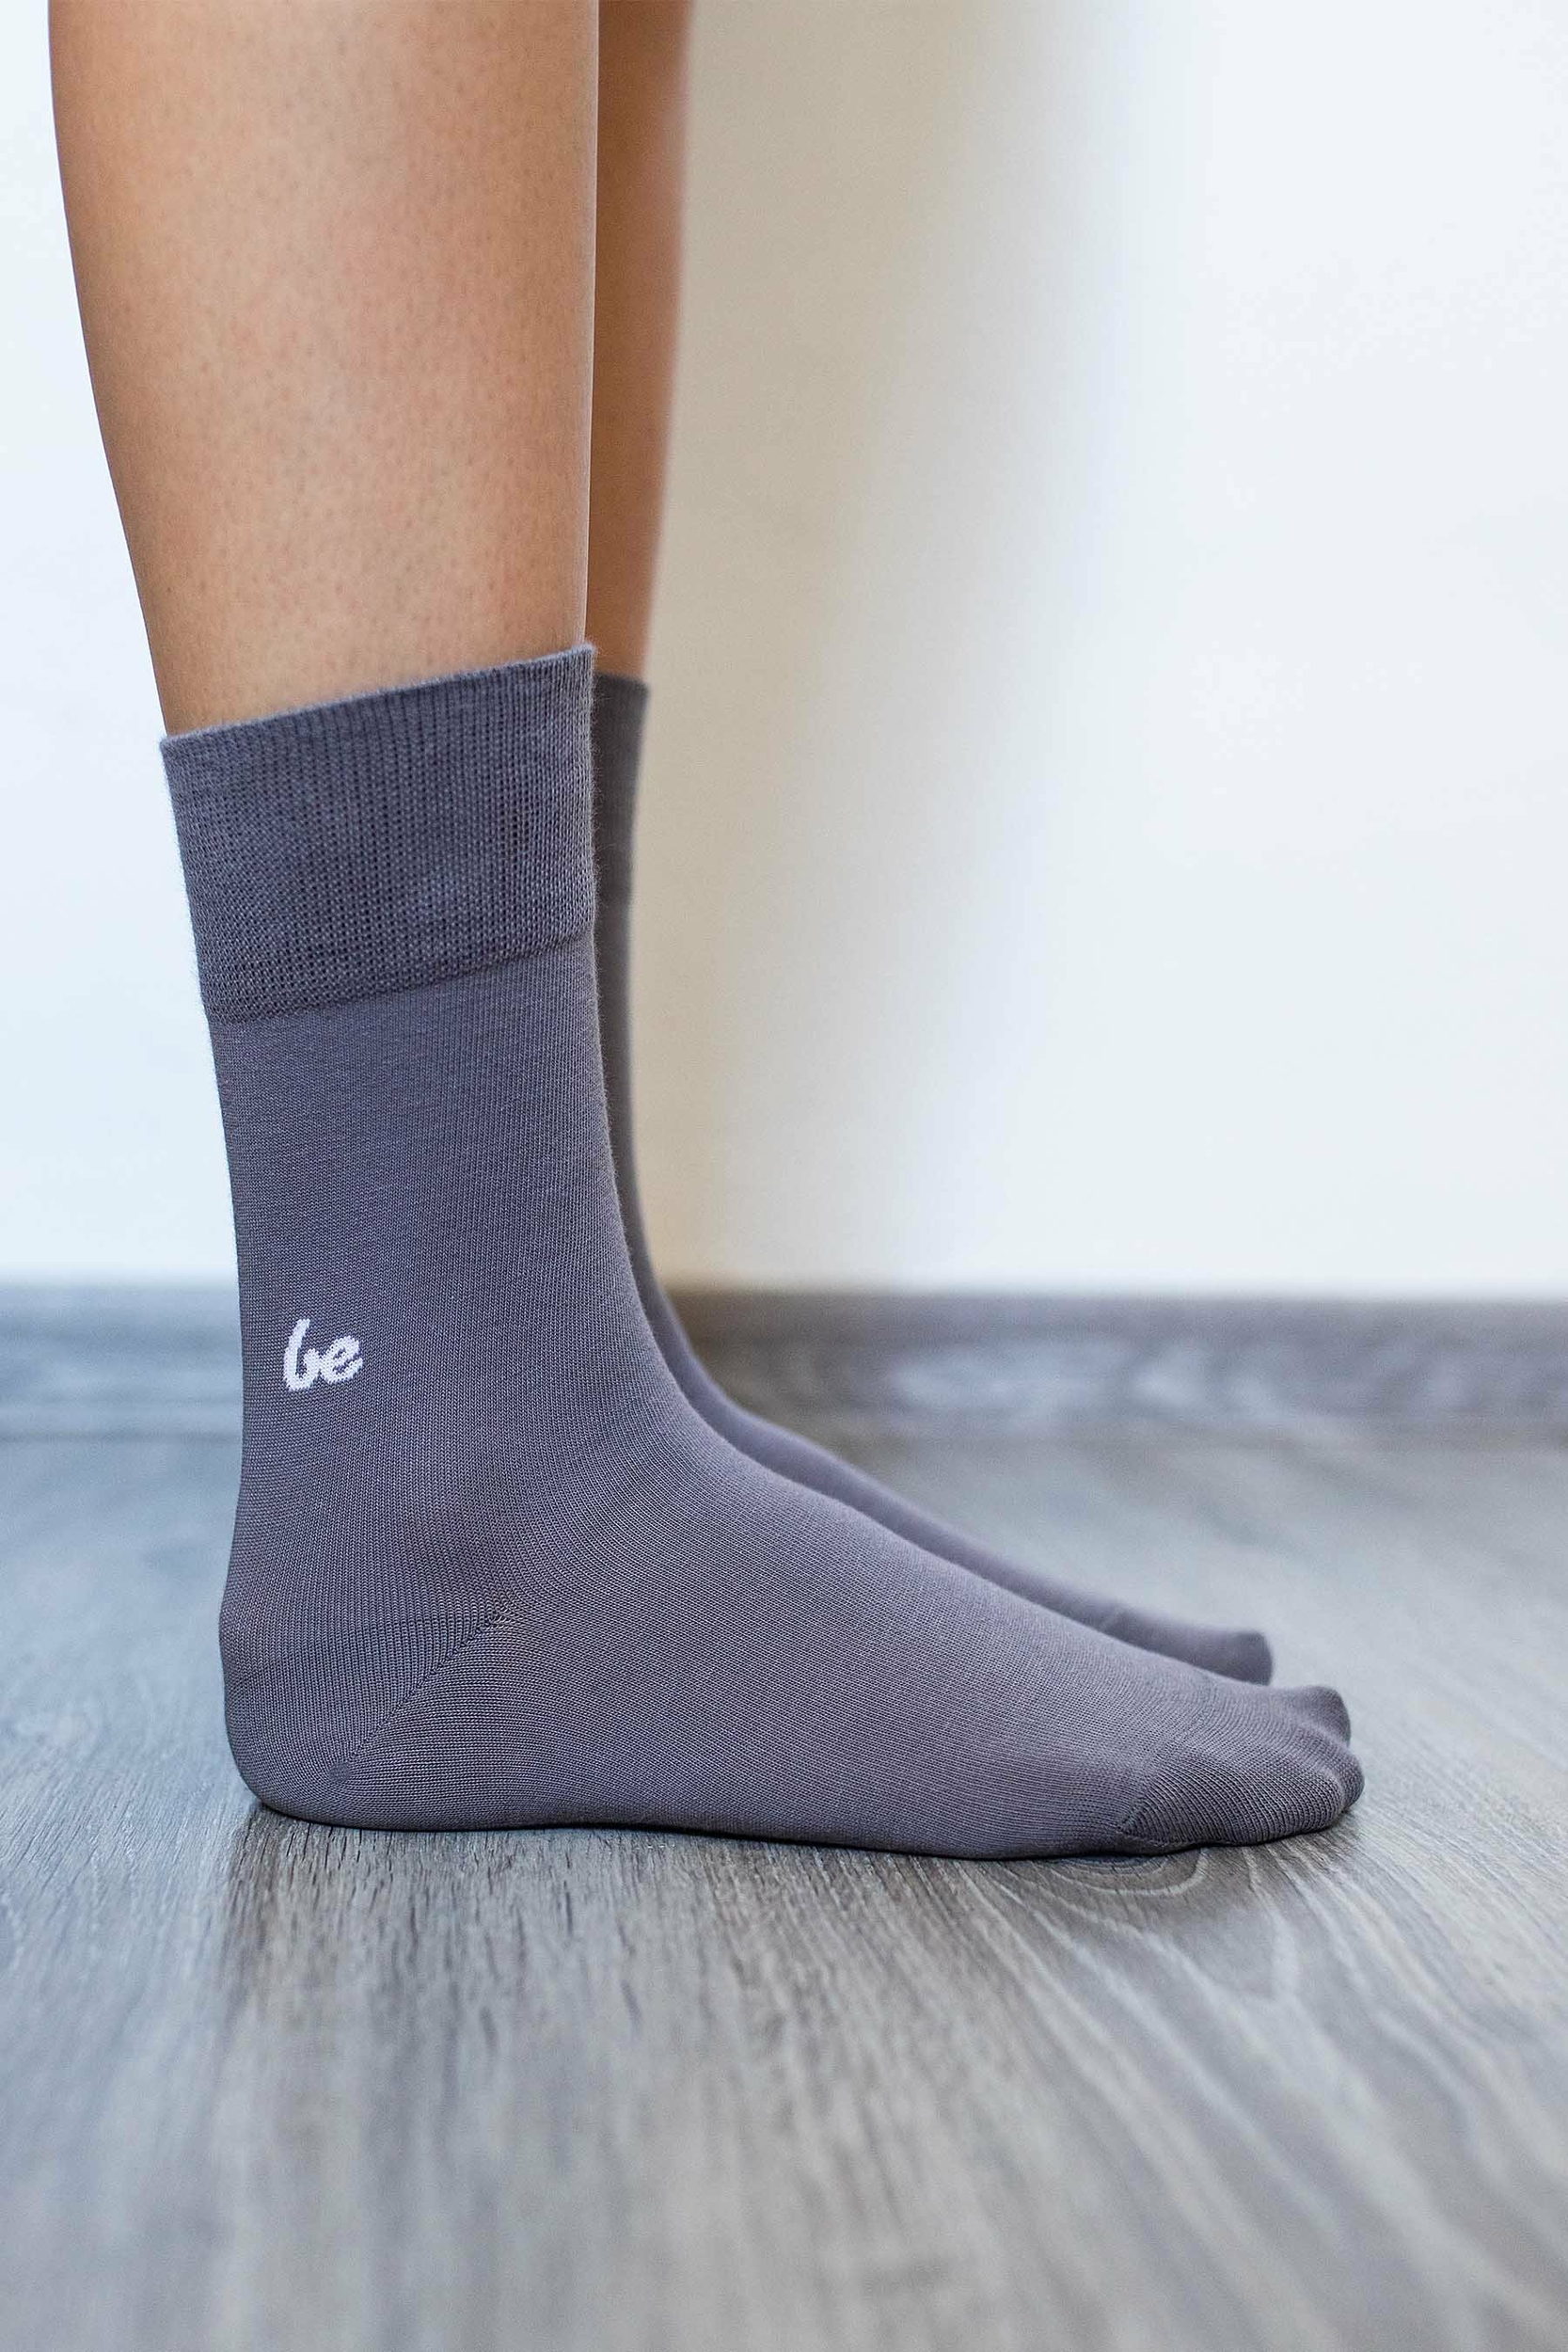 Chaussettes barefoot grise be lenka sur la boutique liberty pieds-5